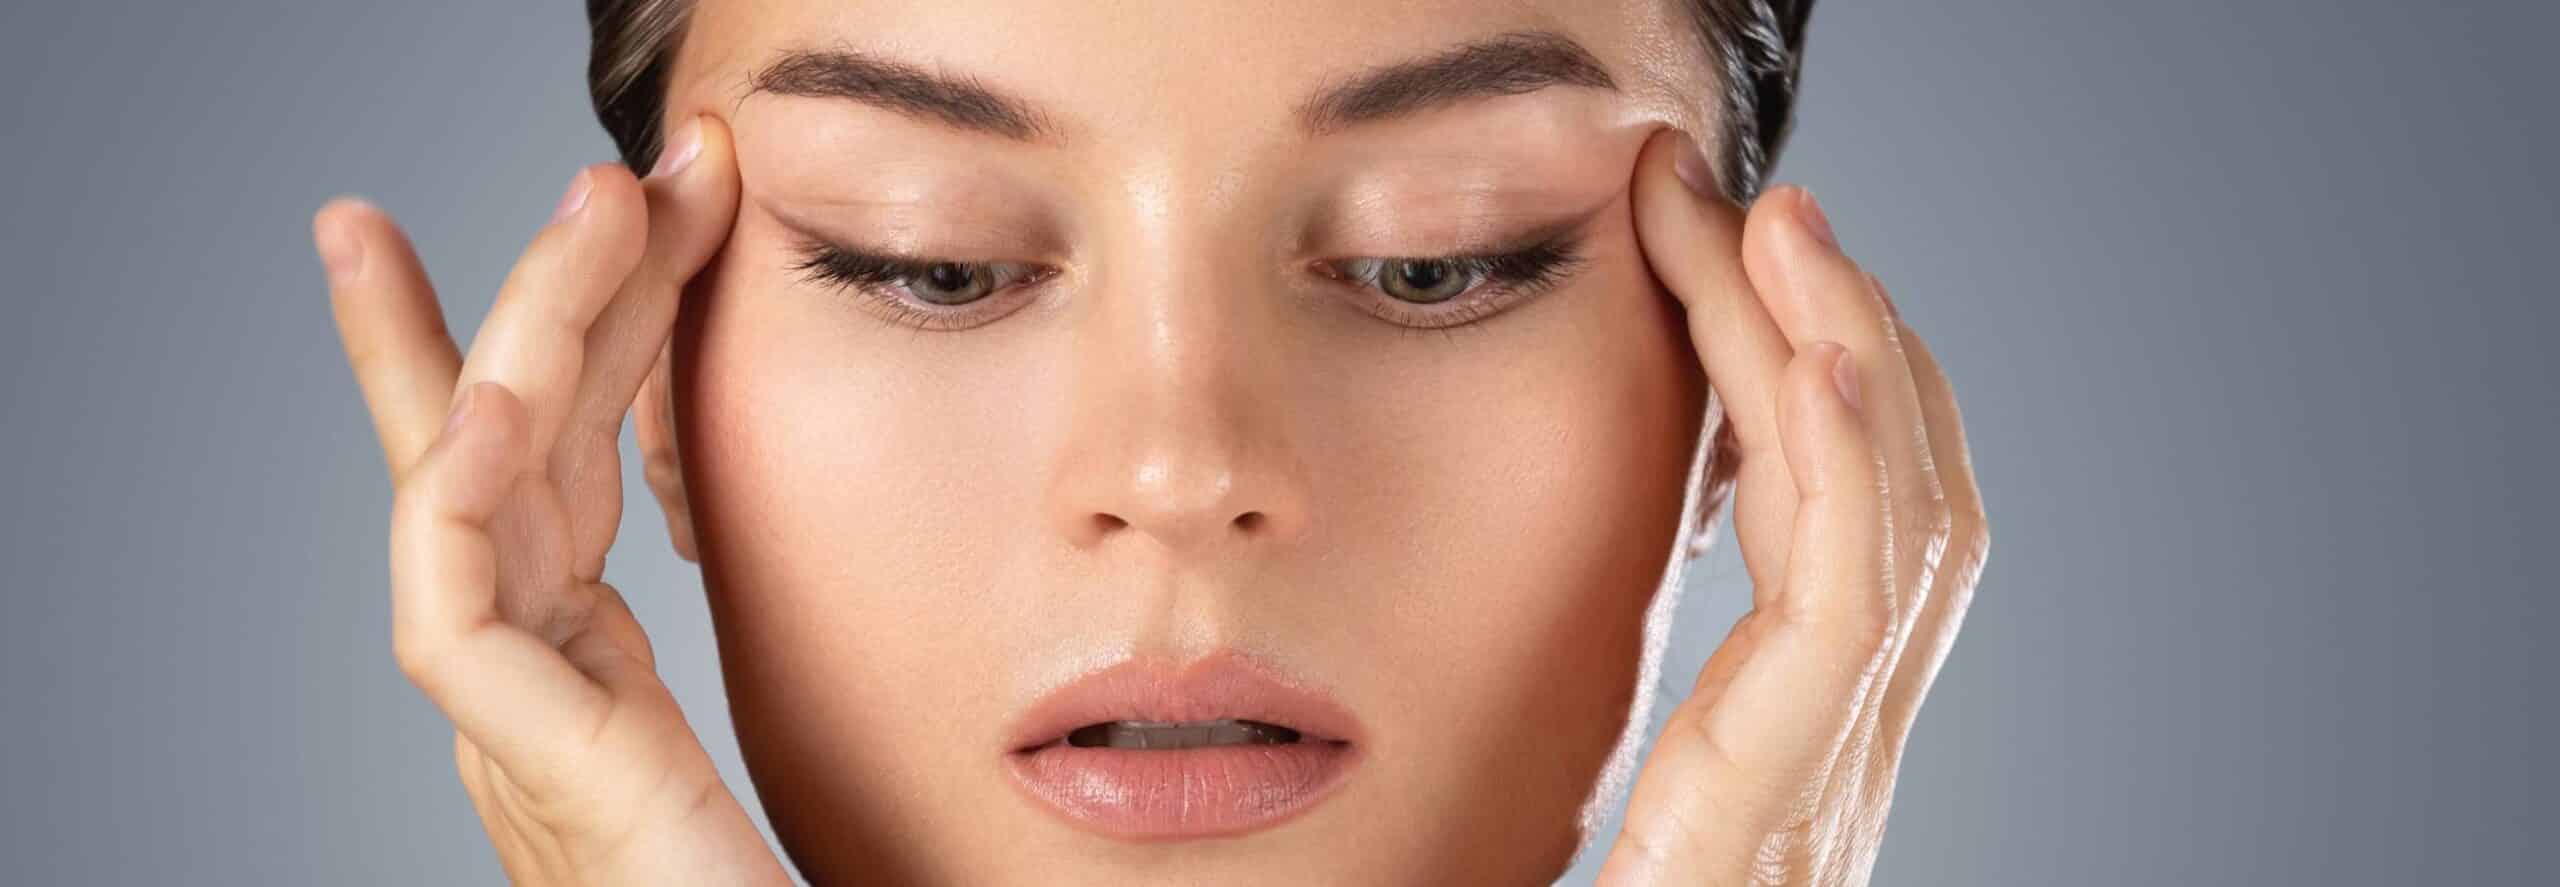 Comment bien dormir après une injection de botox au visage ? | Dr Hayot | Paris